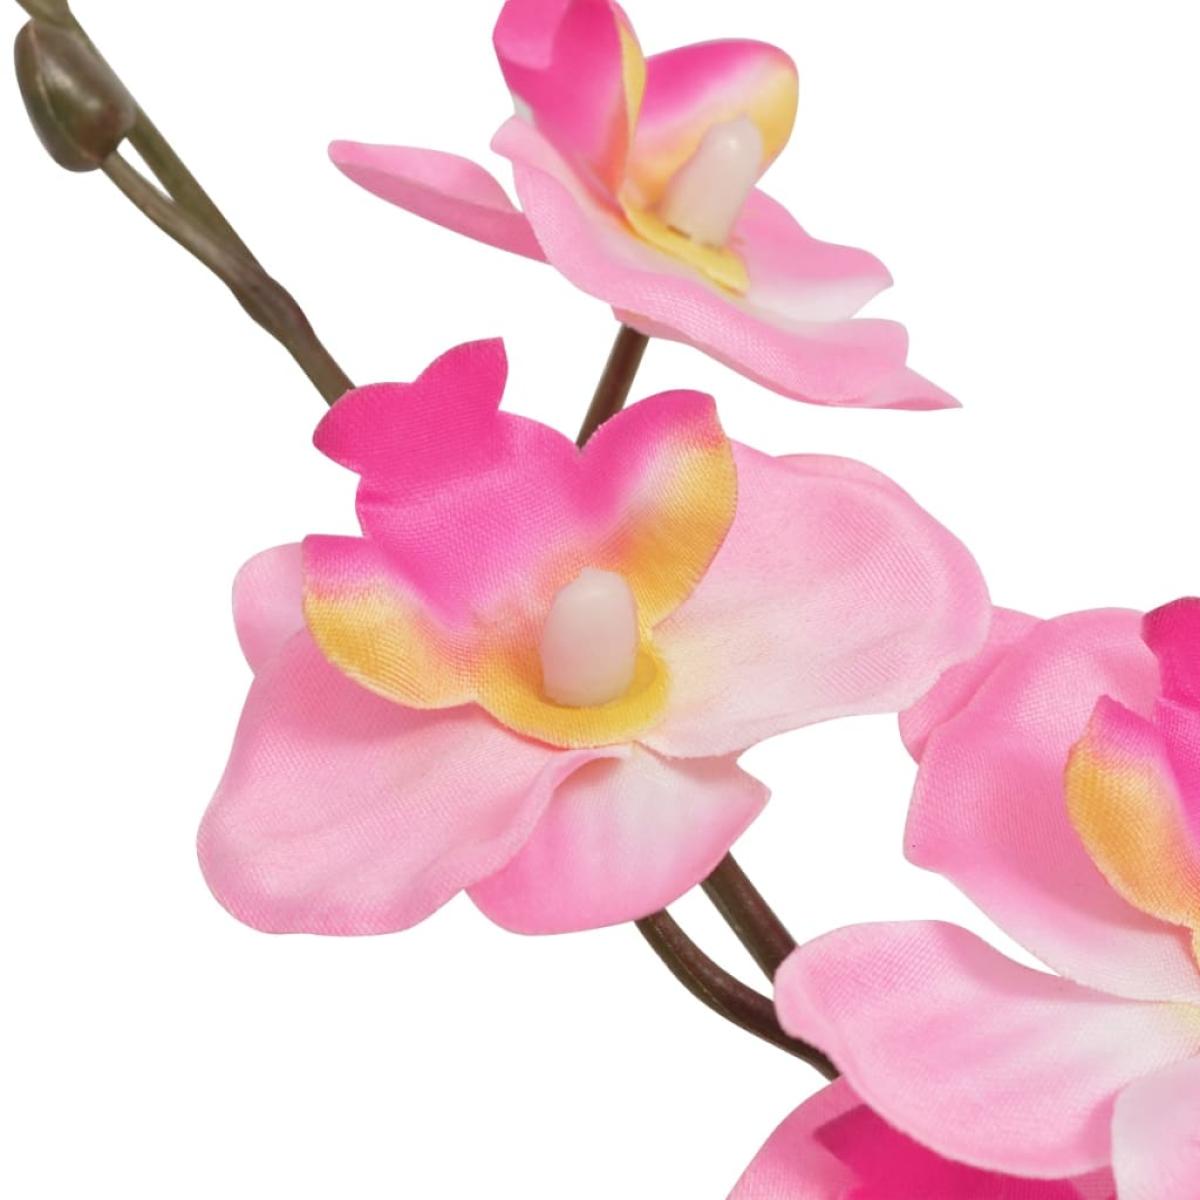 Planta artificial orquídea con macetero 30 cm rosa